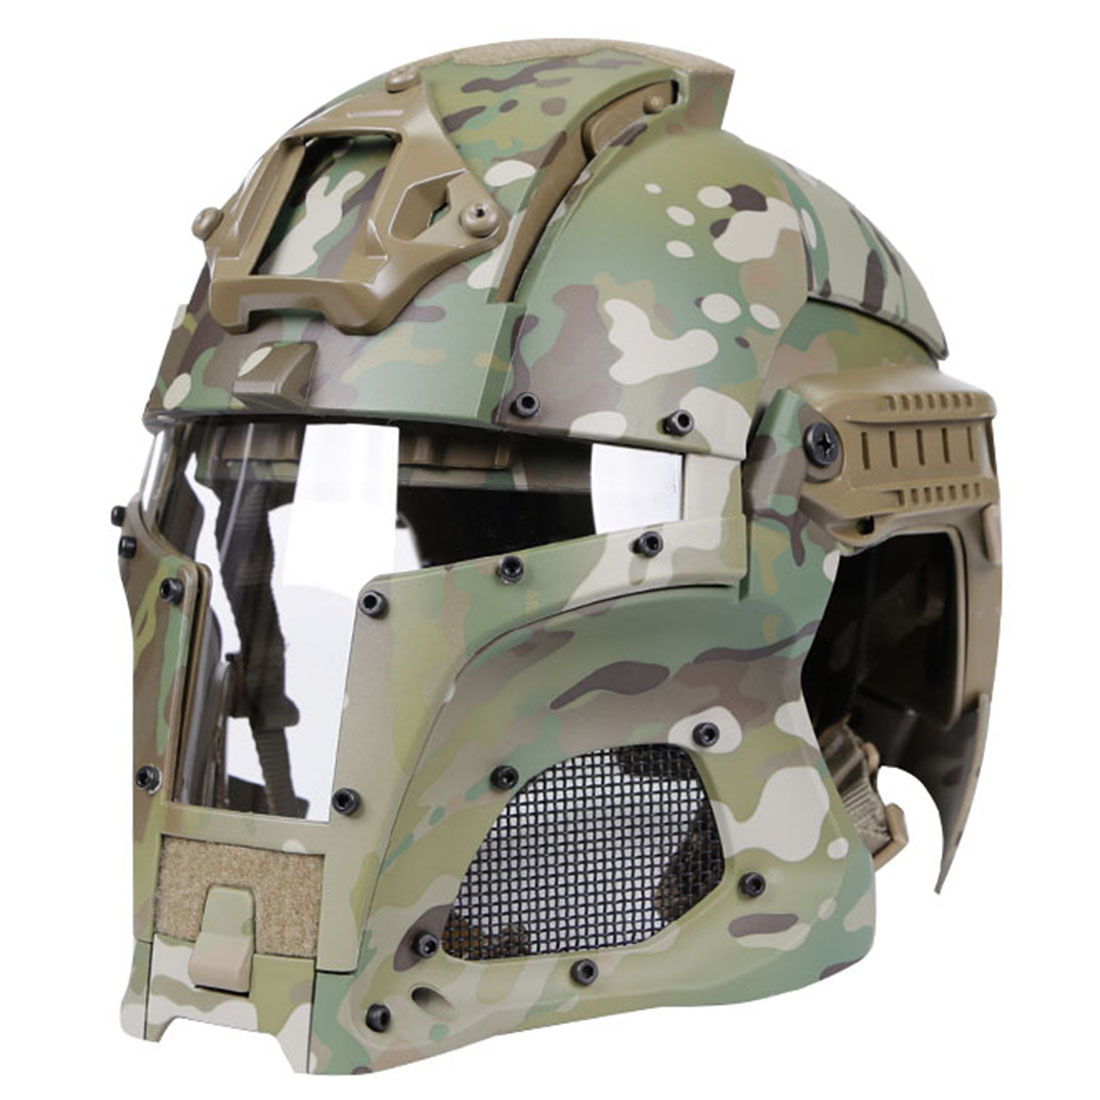 Купить страйкбольный шлем. Шлем пластиковый с маской Tactical Full face as-hm0123od-TP. Шлем WOSPORT Tactical. Tactical Full face шлем. WOSPORT Airsoft шлем.